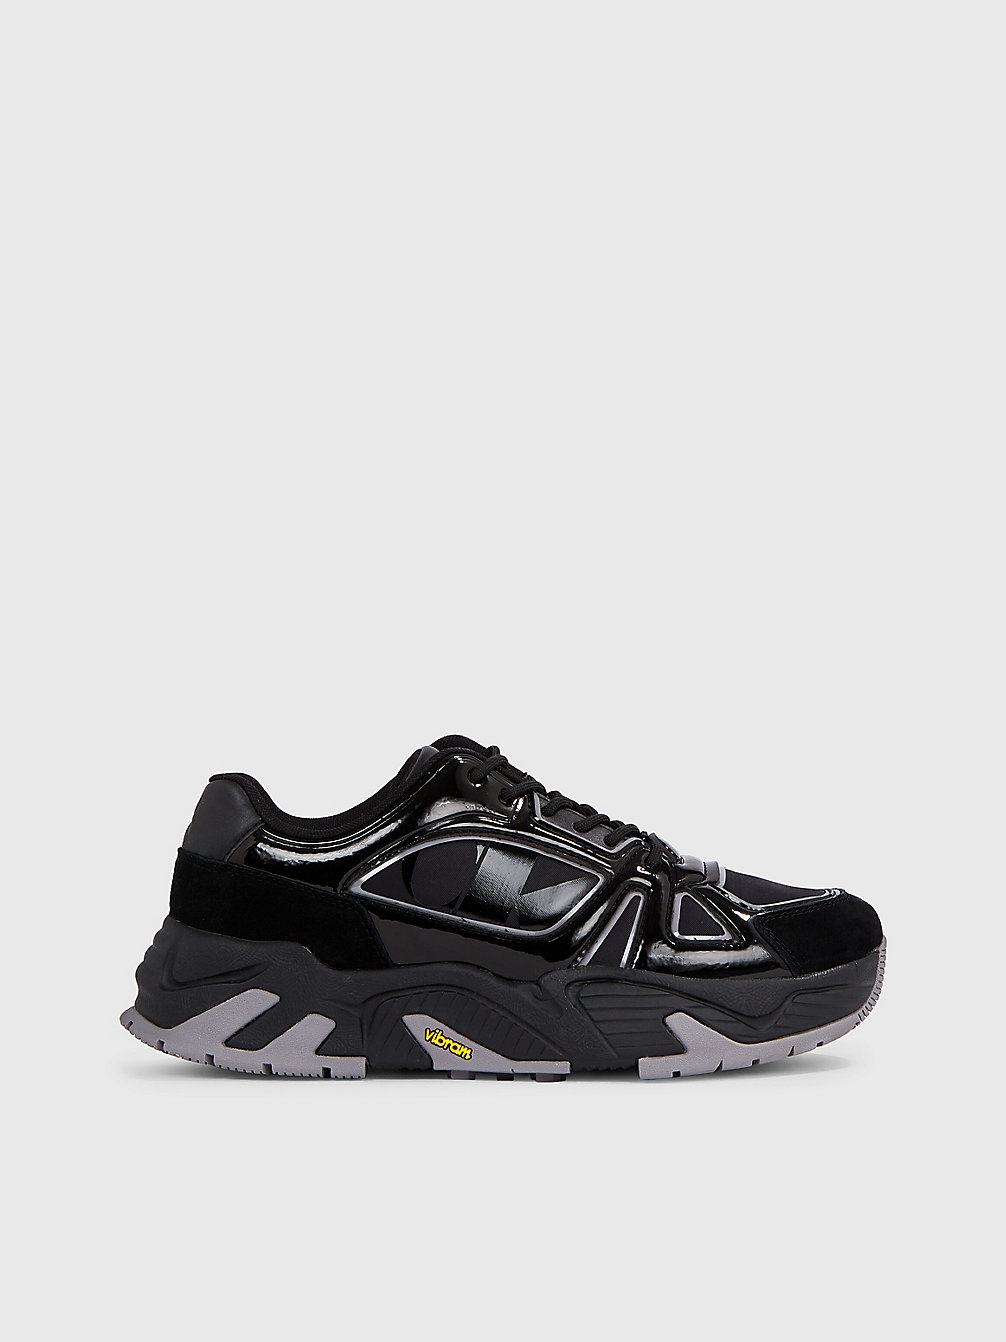 TRIPLE BLACK Vibram® Chunky Sneakers undefined Herren Calvin Klein